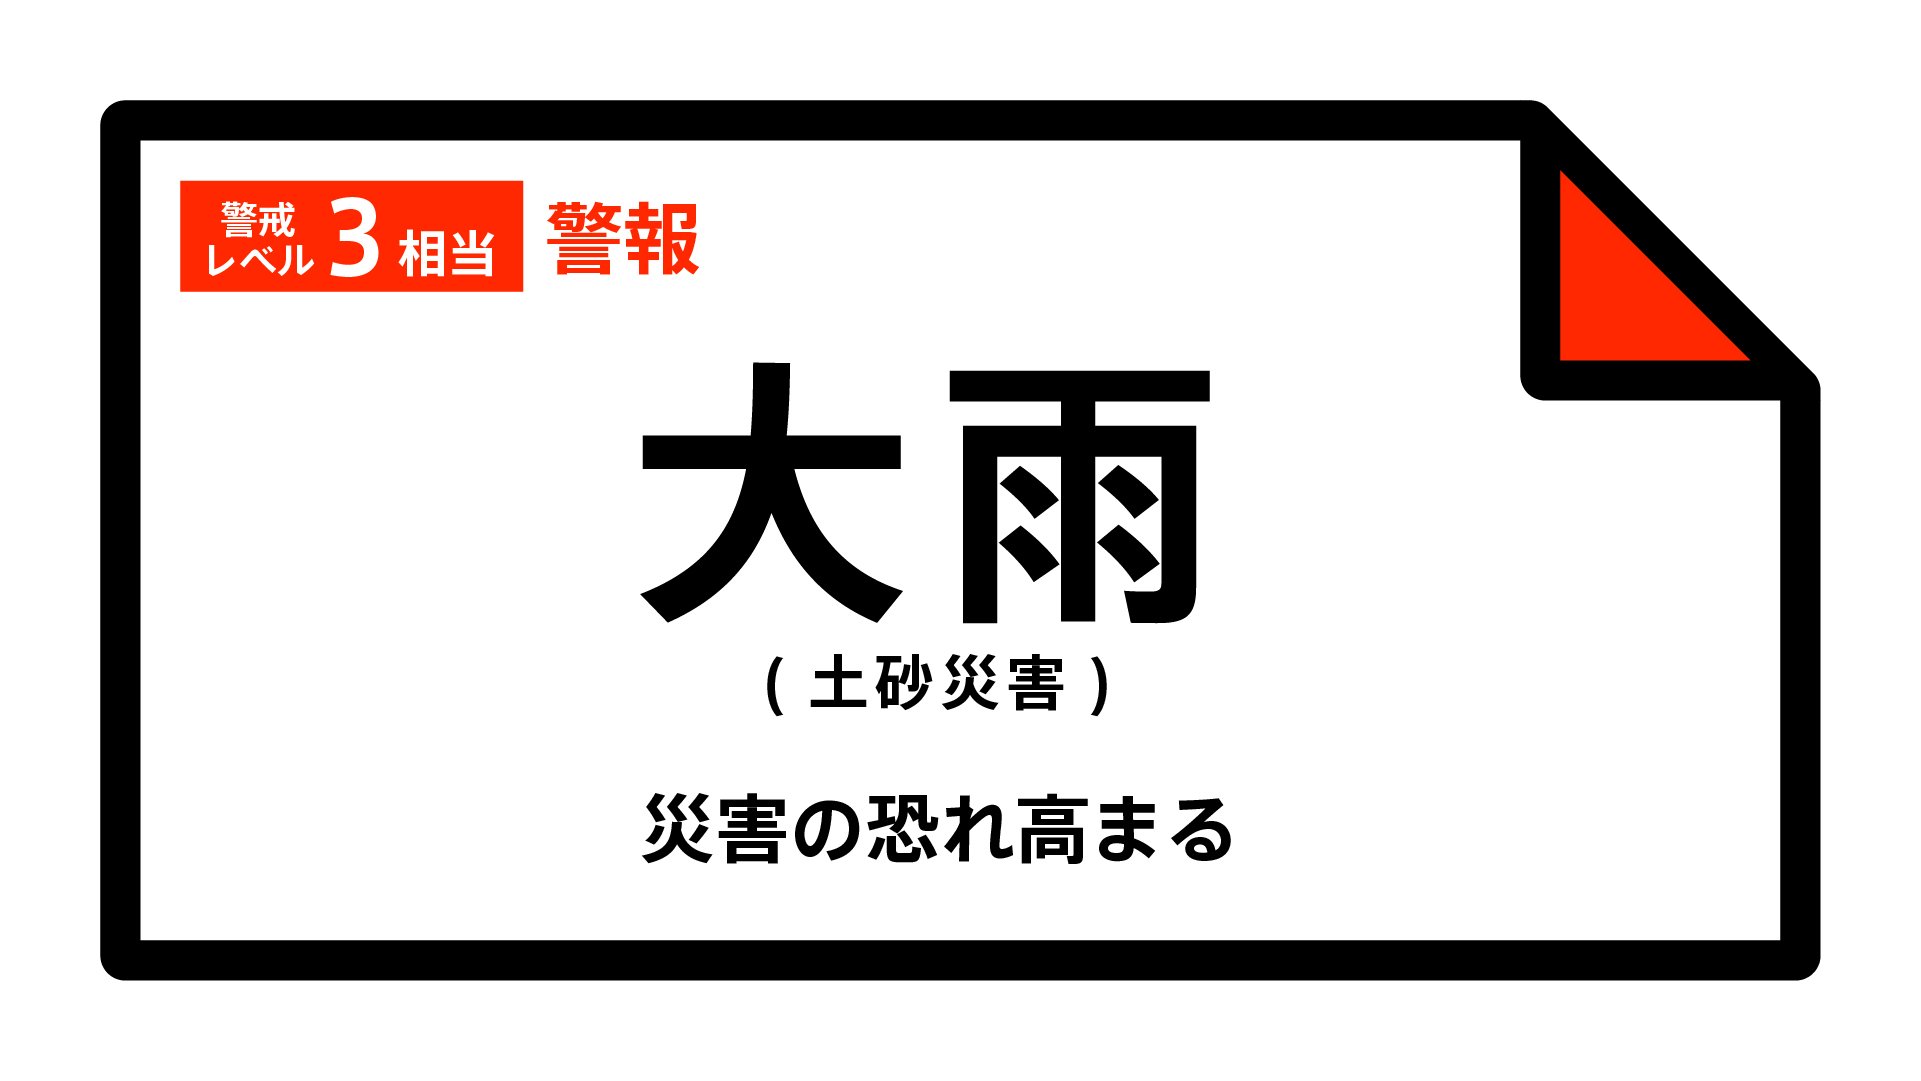 【大雨警報】石川県・小松市、加賀市、白山市、能美市に発表